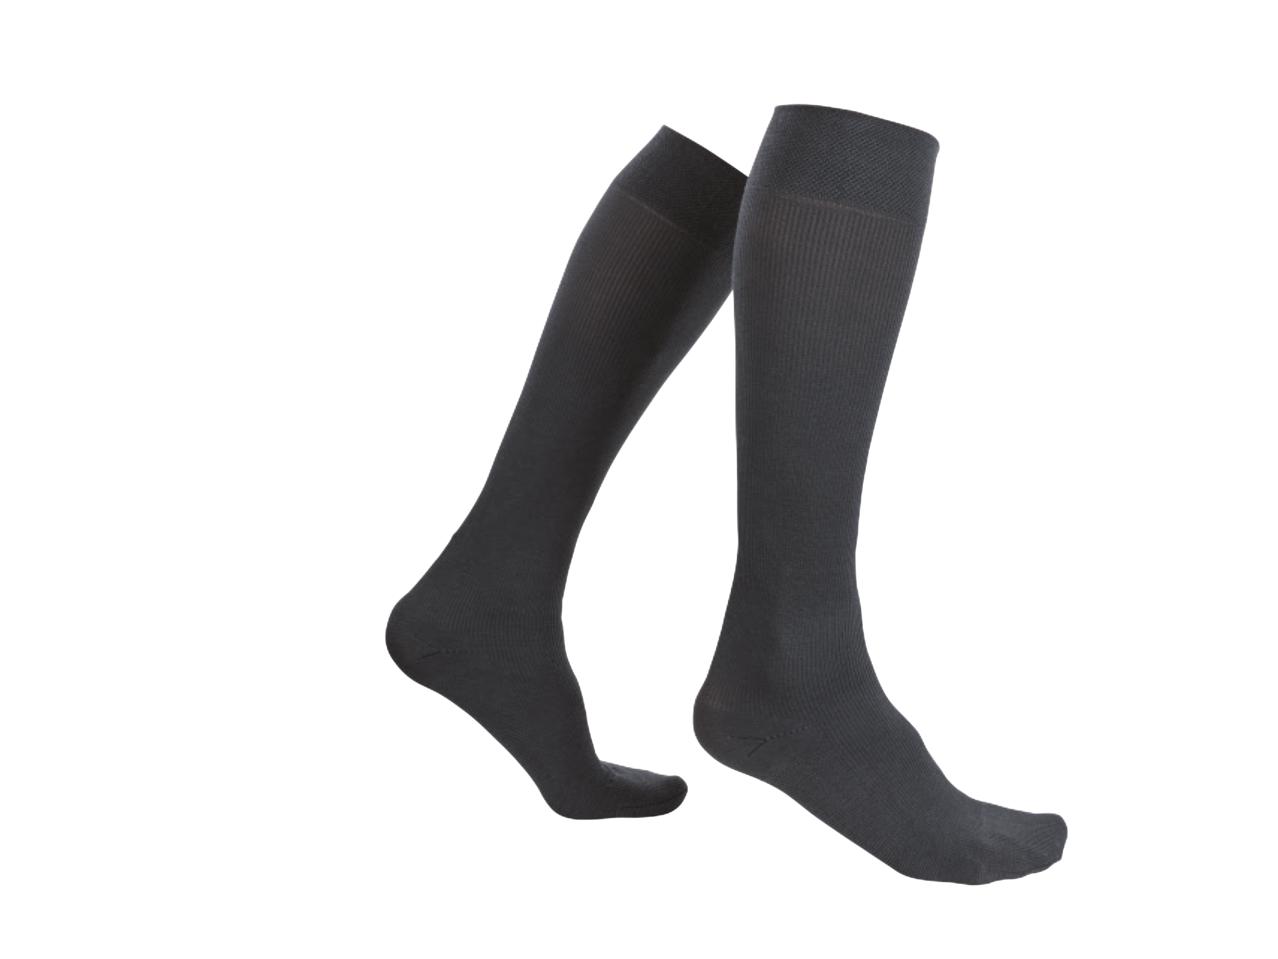 SENSIPLAST Men's Travel Knee-High Socks